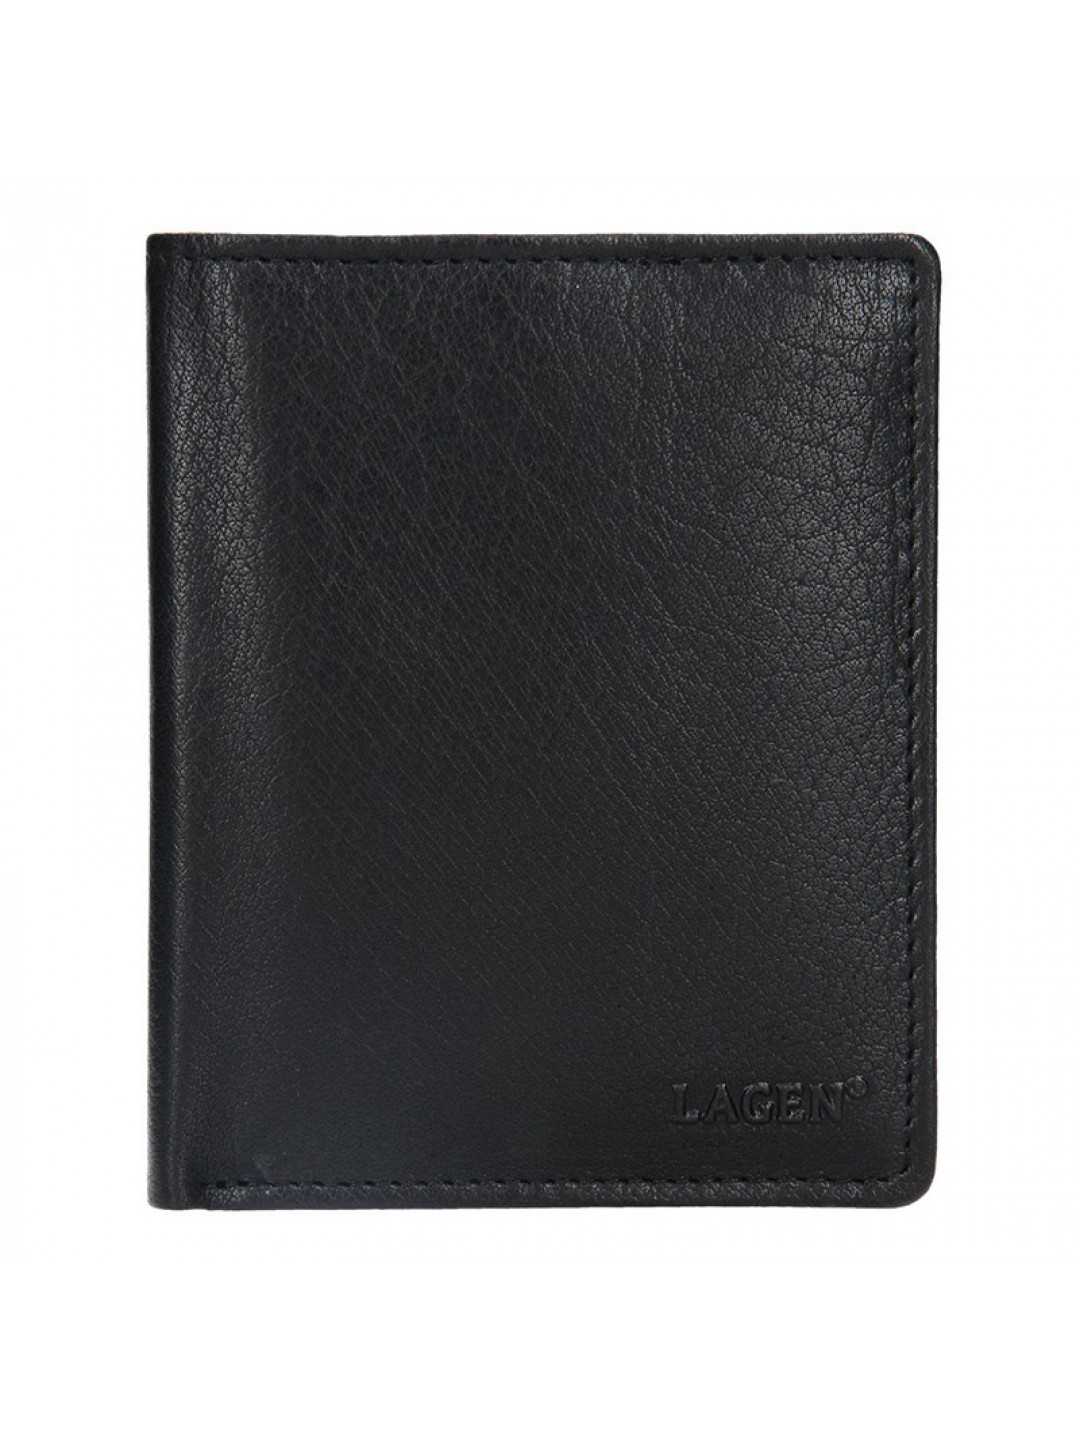 Pánská kožená peněženka Lagen Magnusen – černá